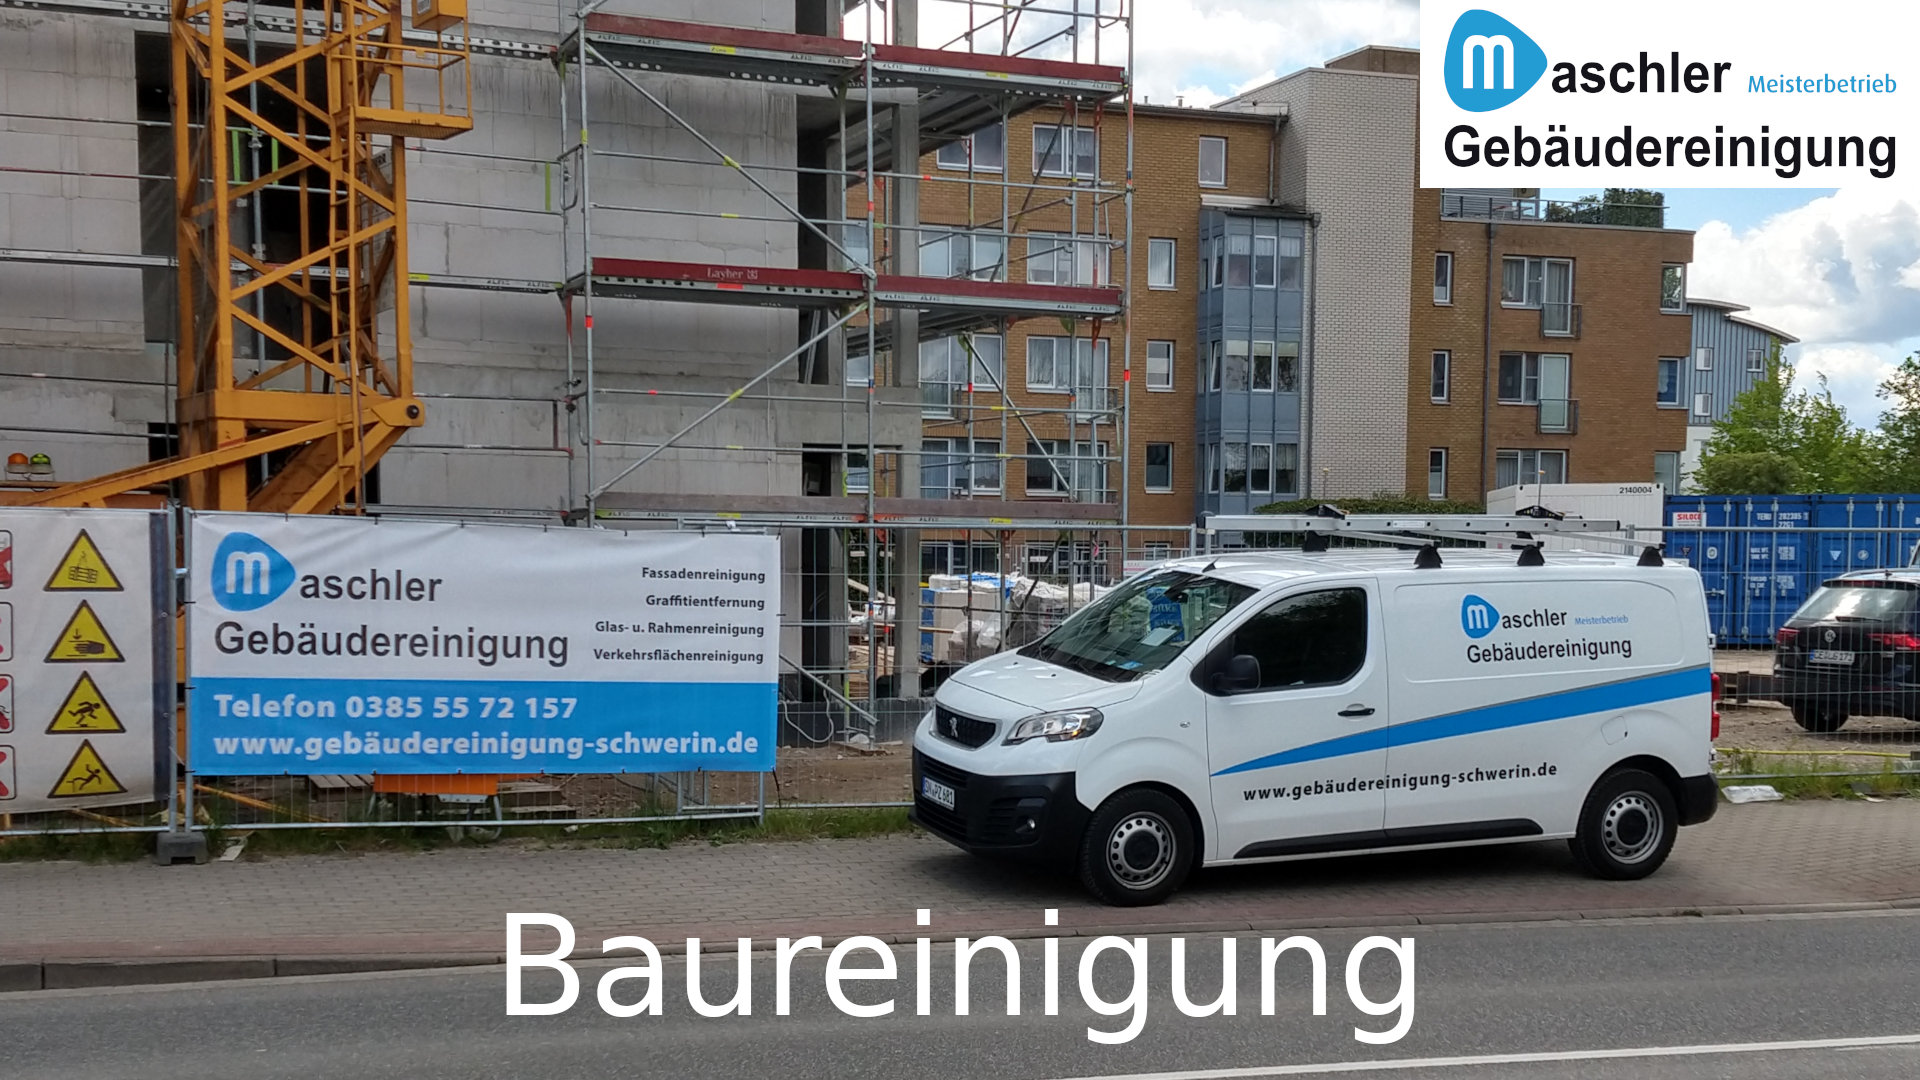 Baureinigung - Grob & Fein - Gebäudereinigung Maschler GmbH